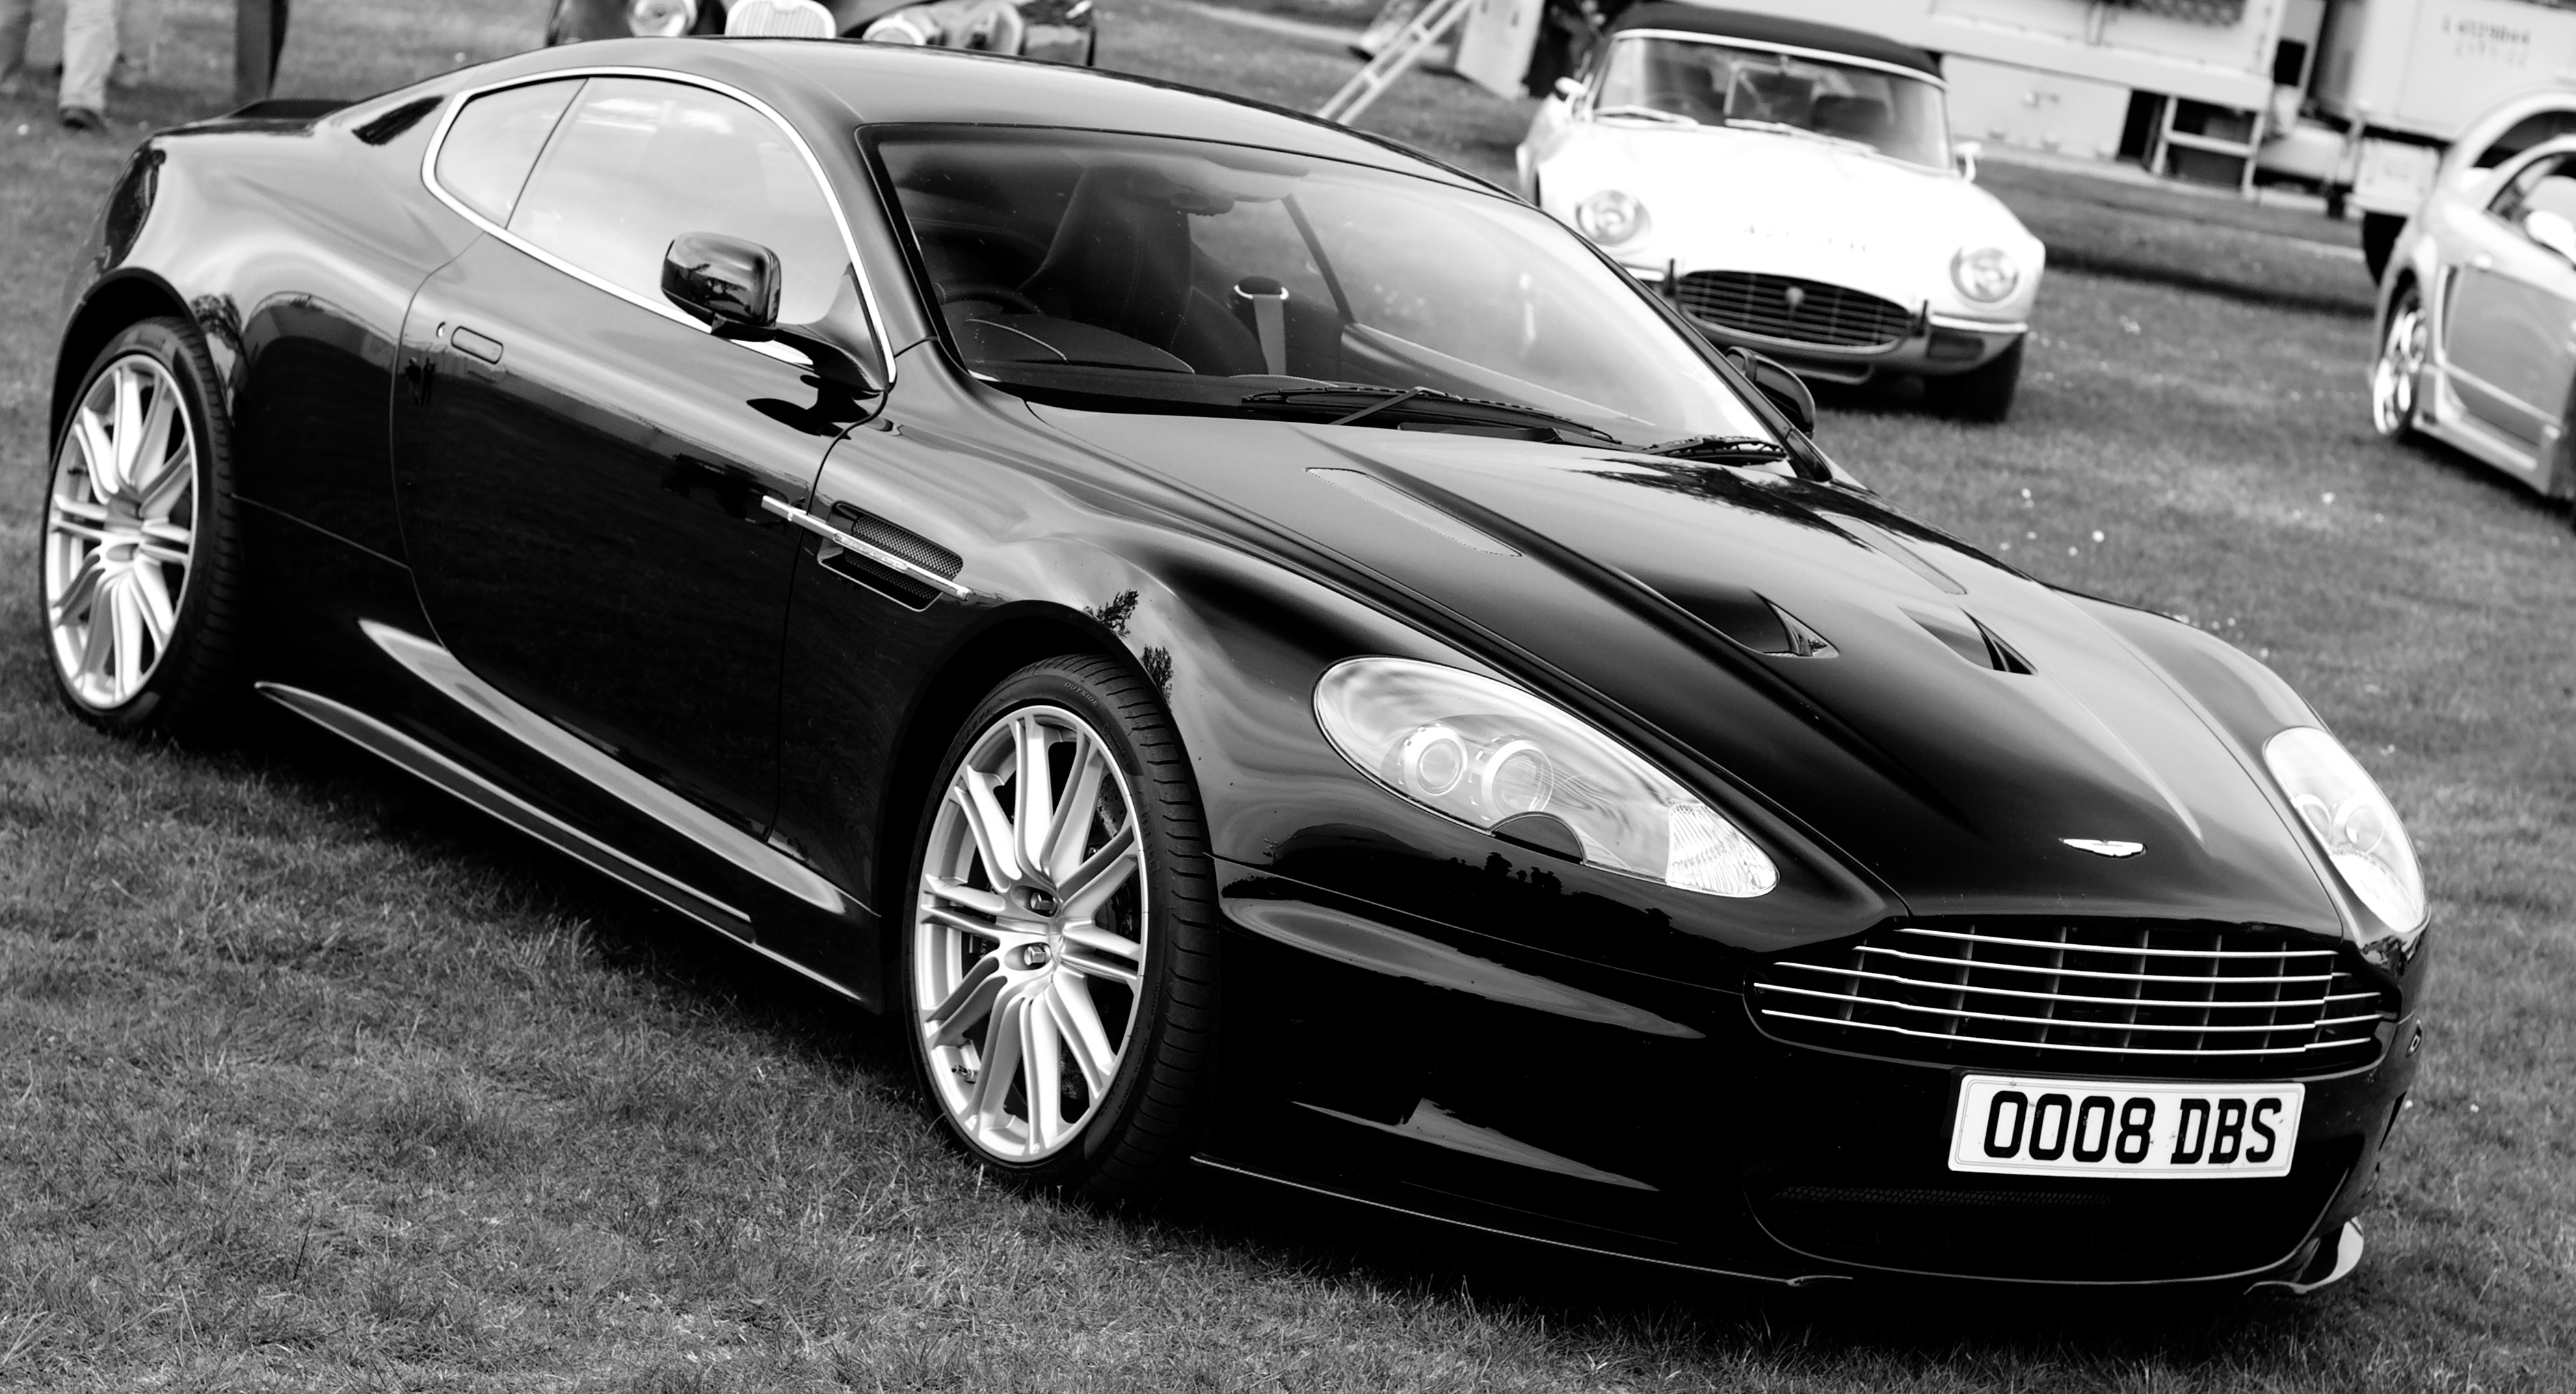 Aston Martin DBS HD wallpapers, Desktop wallpaper - most viewed